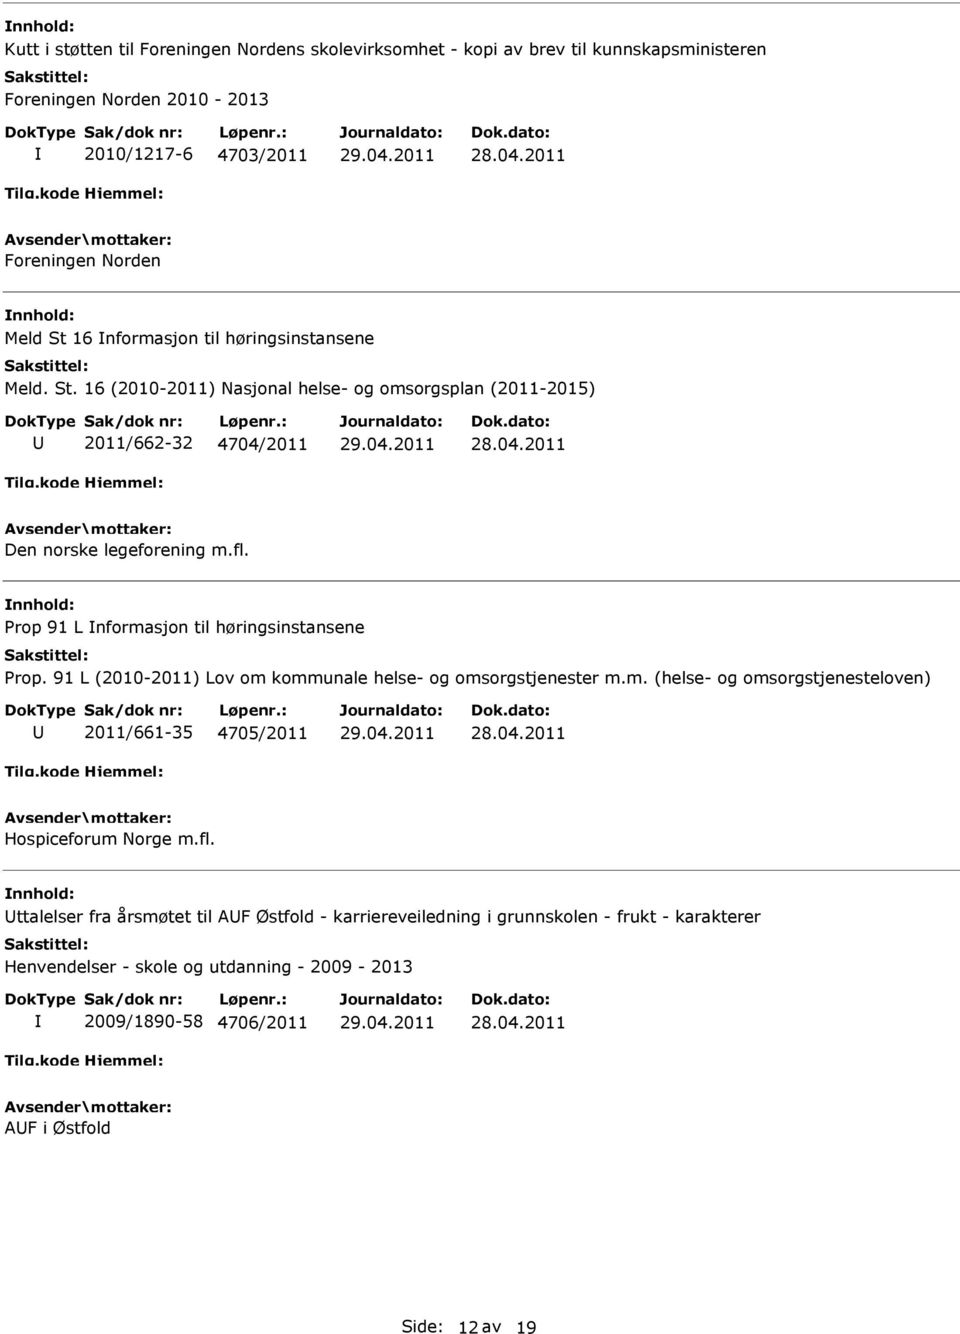 Prop 91 L nformasjon til høringsinstansene Prop. 91 L (2010-2011) Lov om kommunale helse- og omsorgstjenester m.m. (helse- og omsorgstjenesteloven) 2011/661-35 4705/2011 Hospiceforum Norge m.